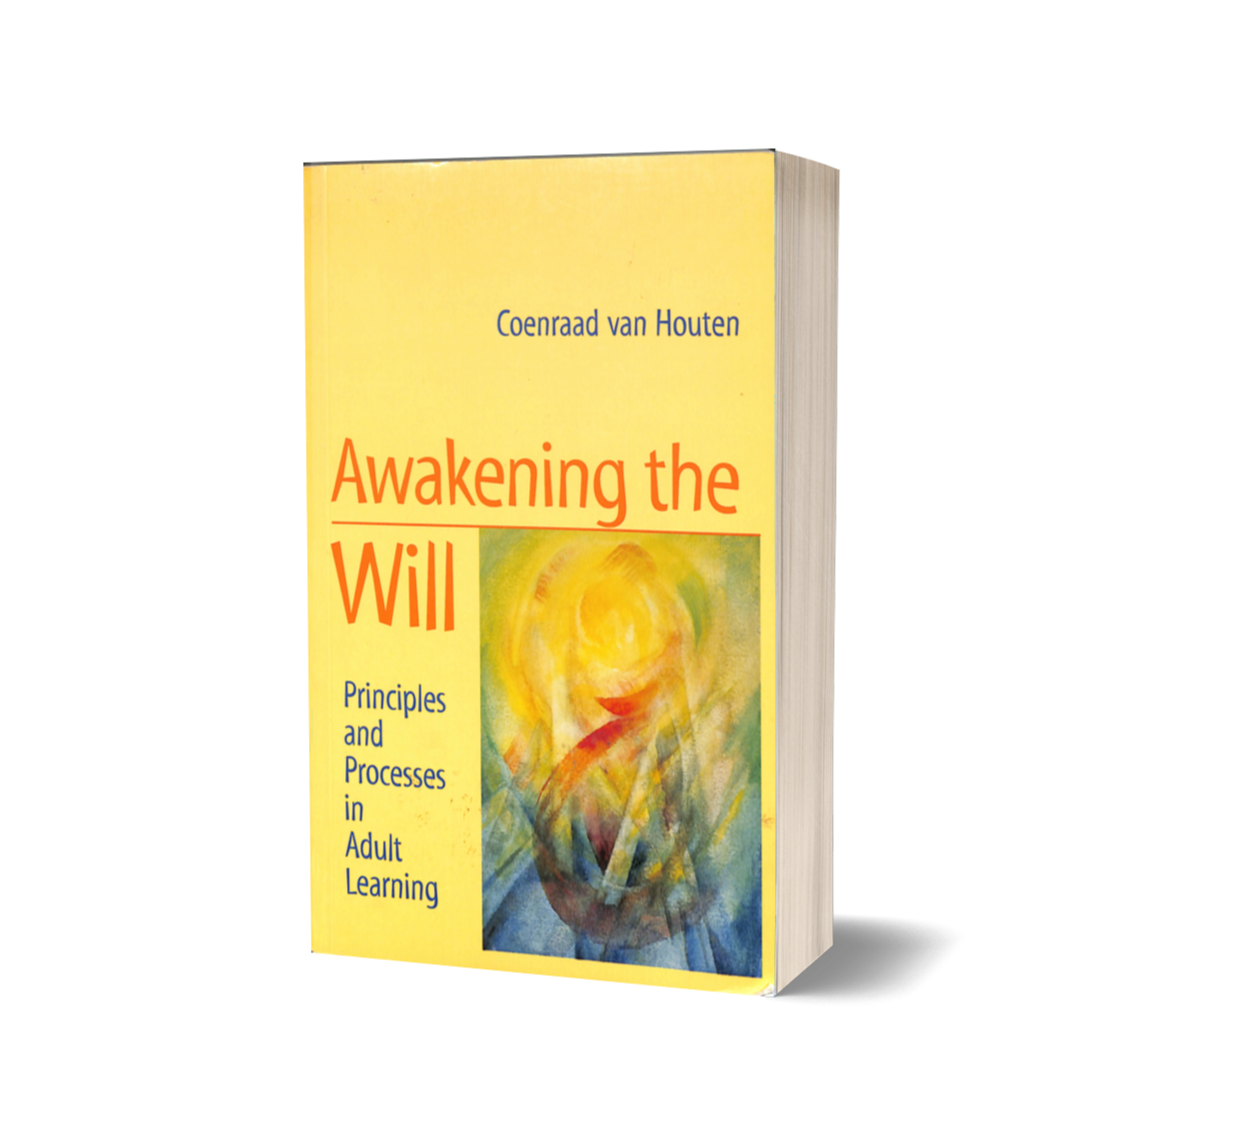 Awakening the Will